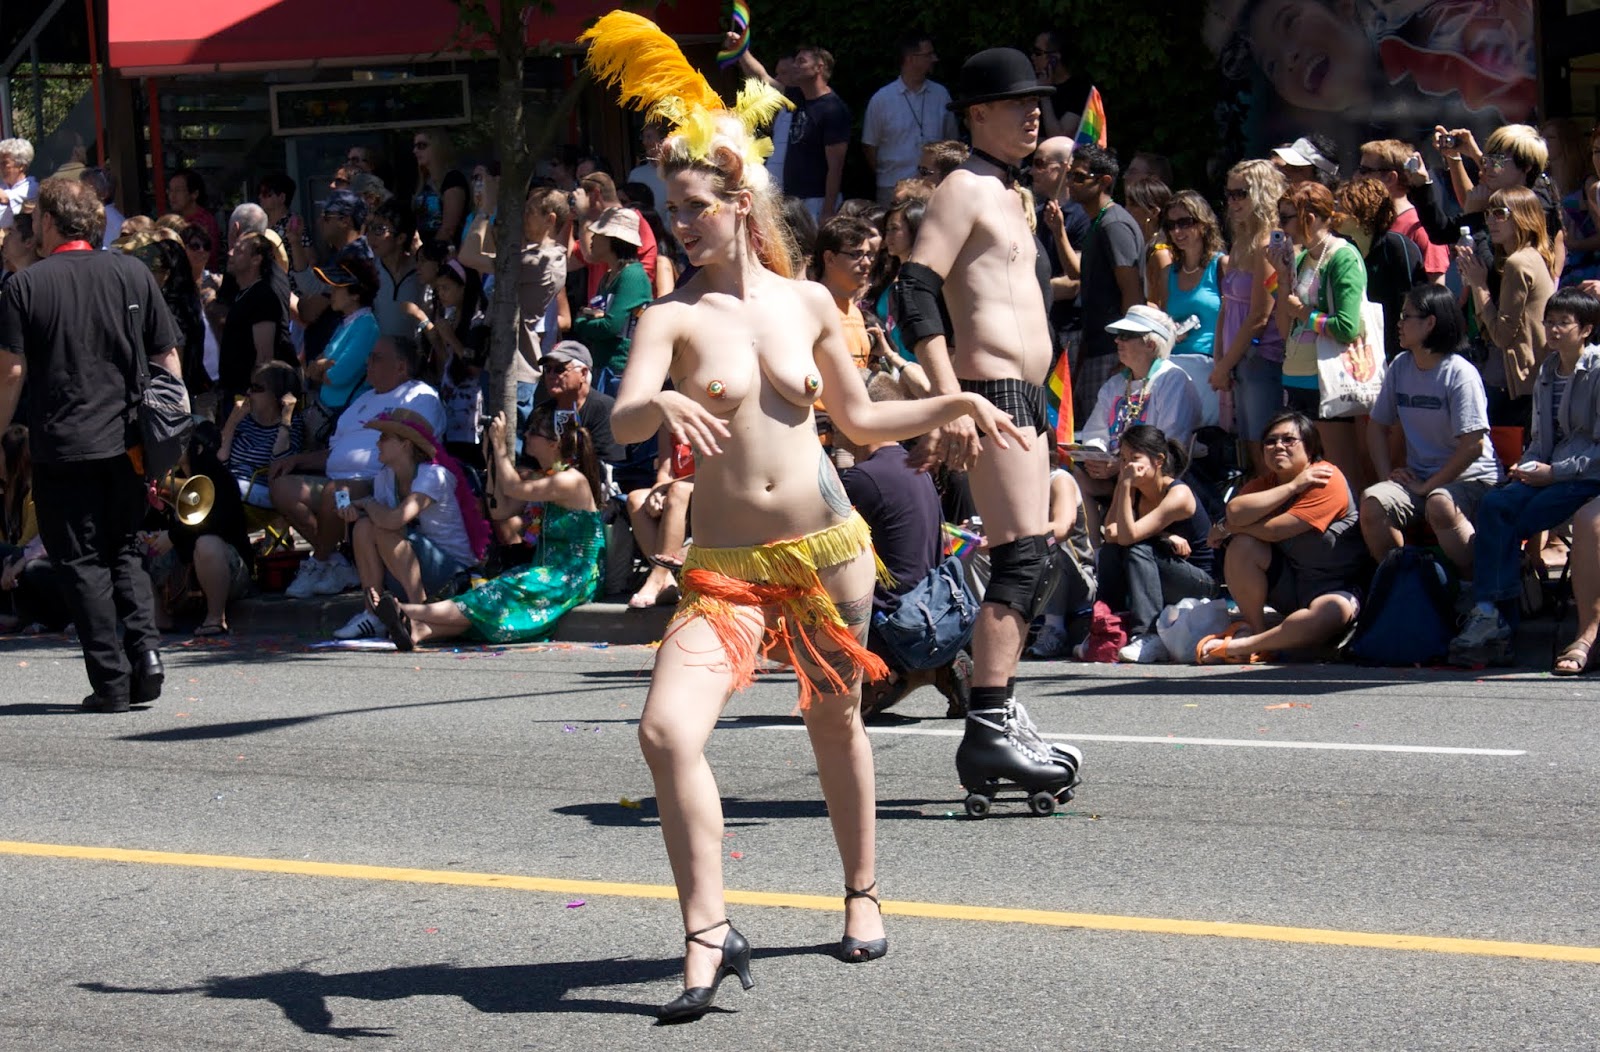 Naked at pride parade